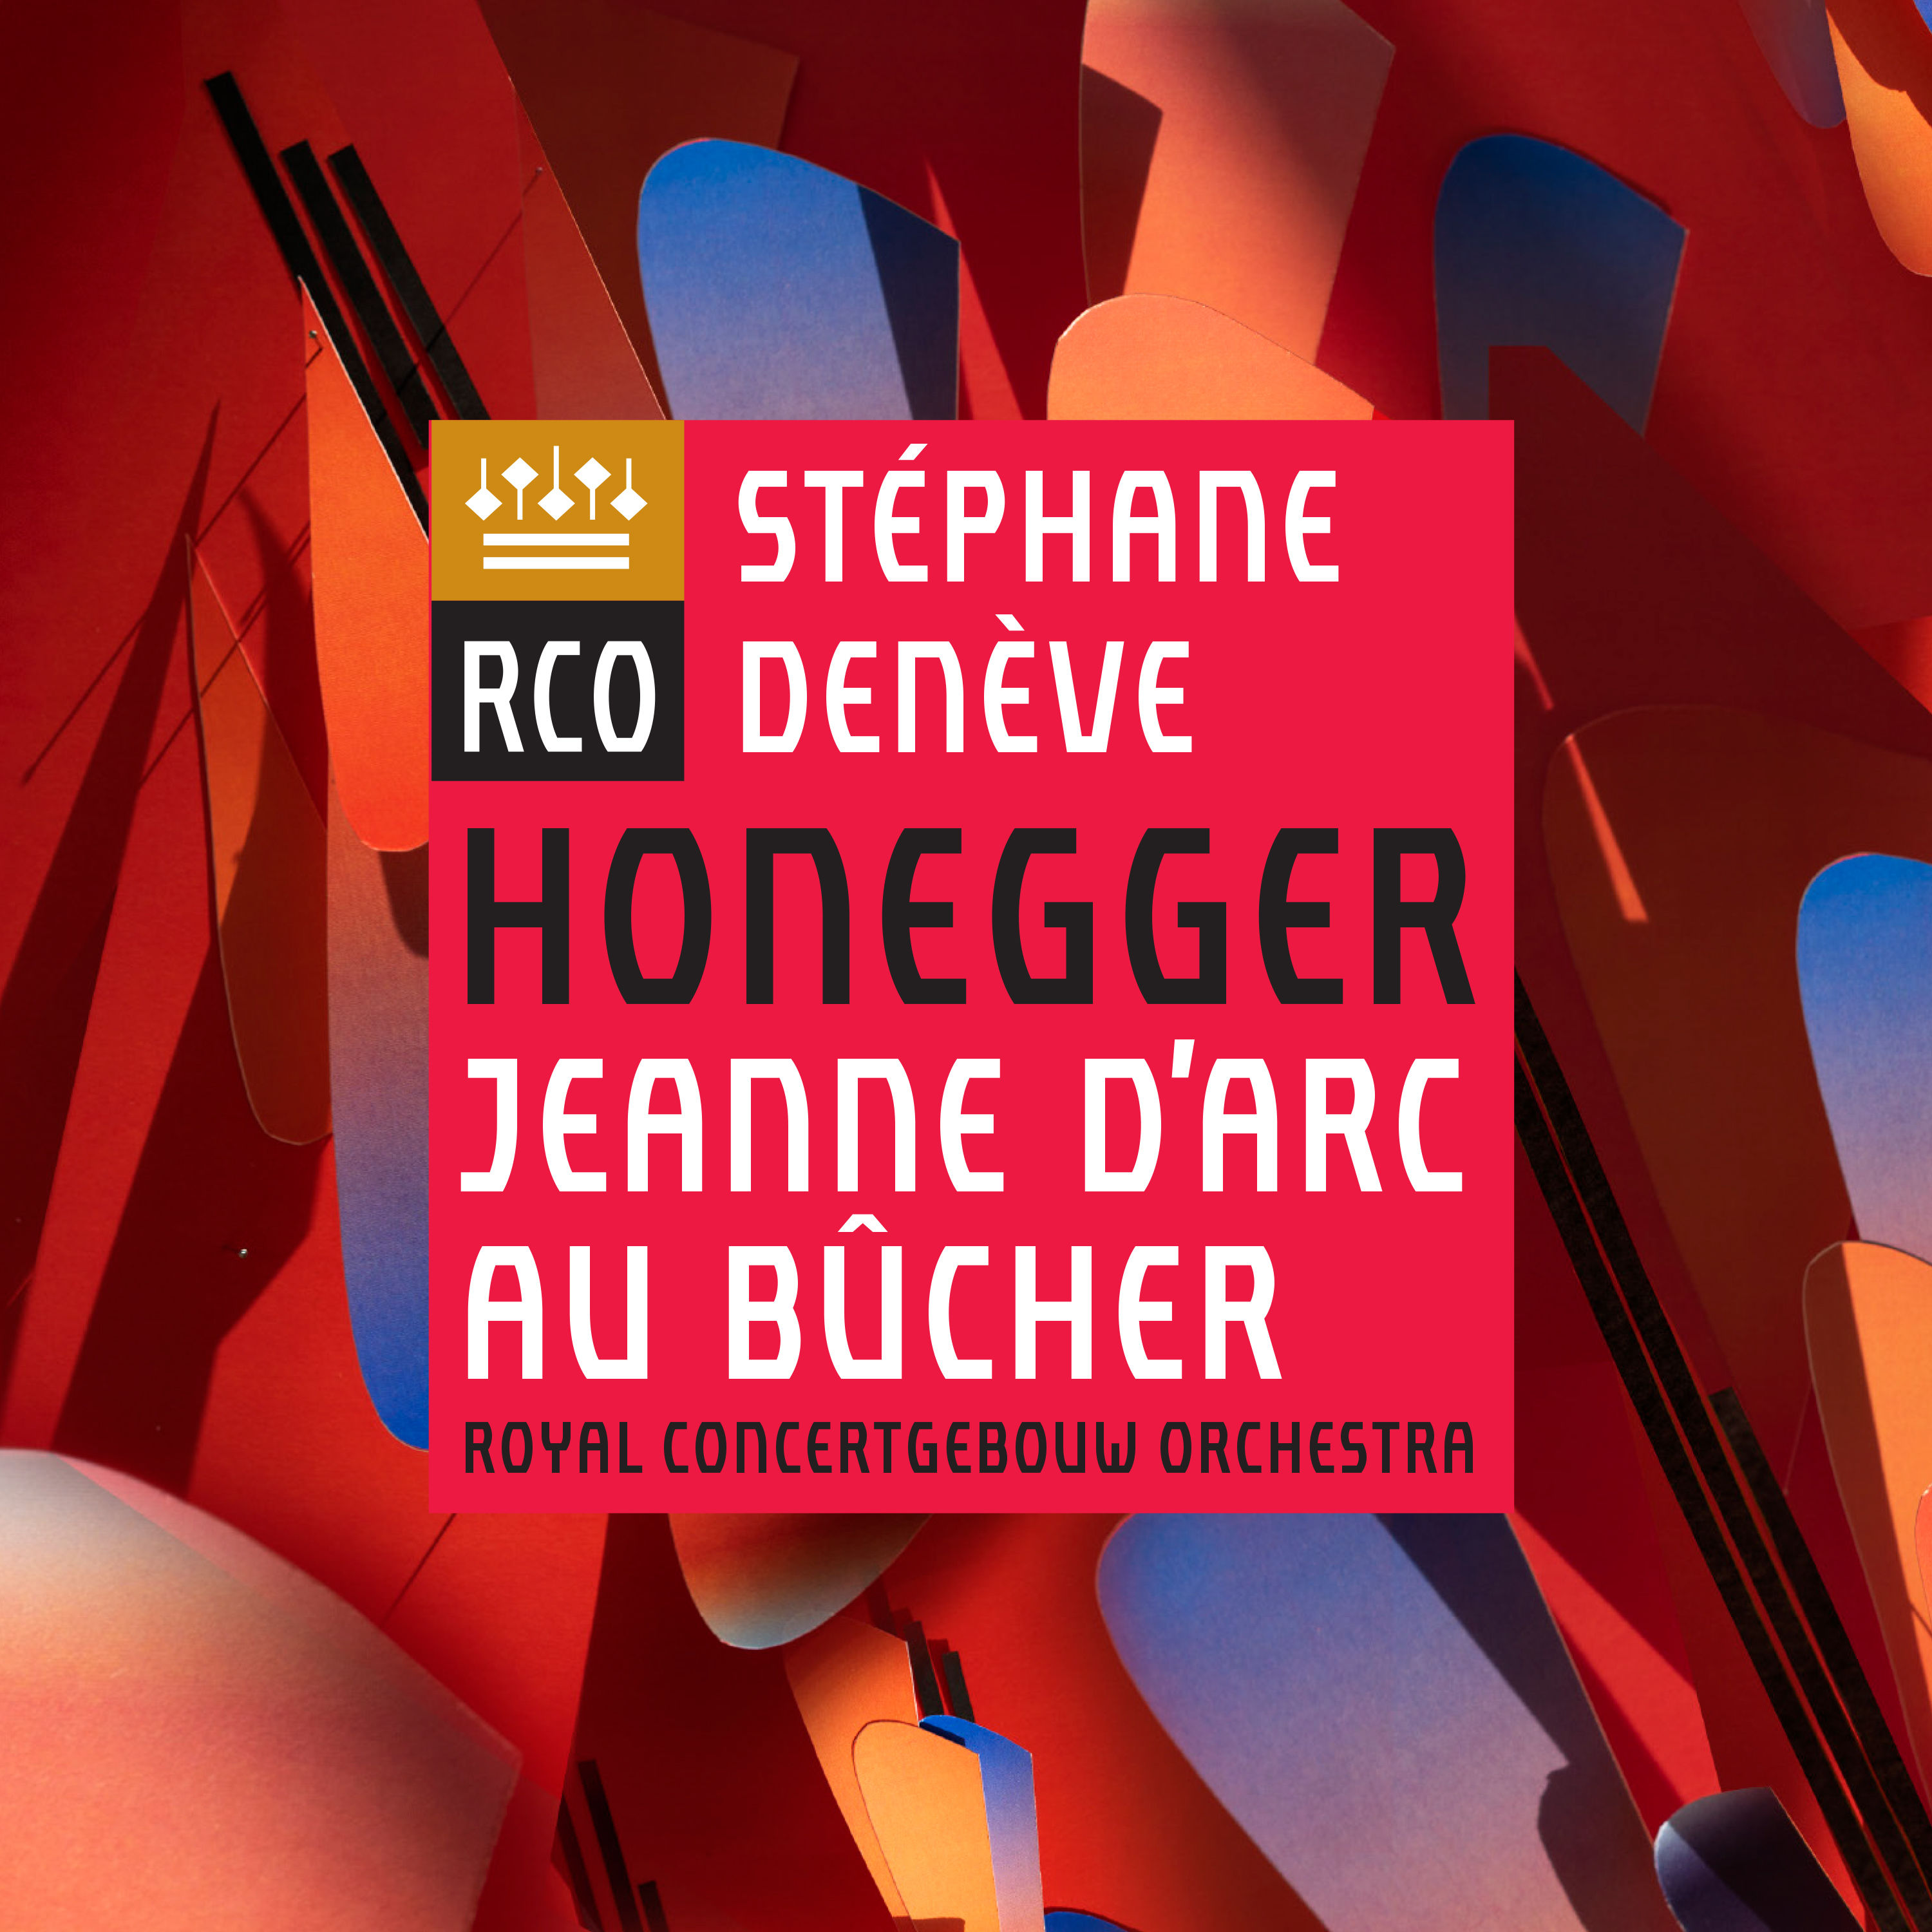 Royal Concertgebouw Orchestra & Stephane Deneve - Honegger: Jeanne d’Arc au bûcher (2019) [FLAC 24bit/96kHz]